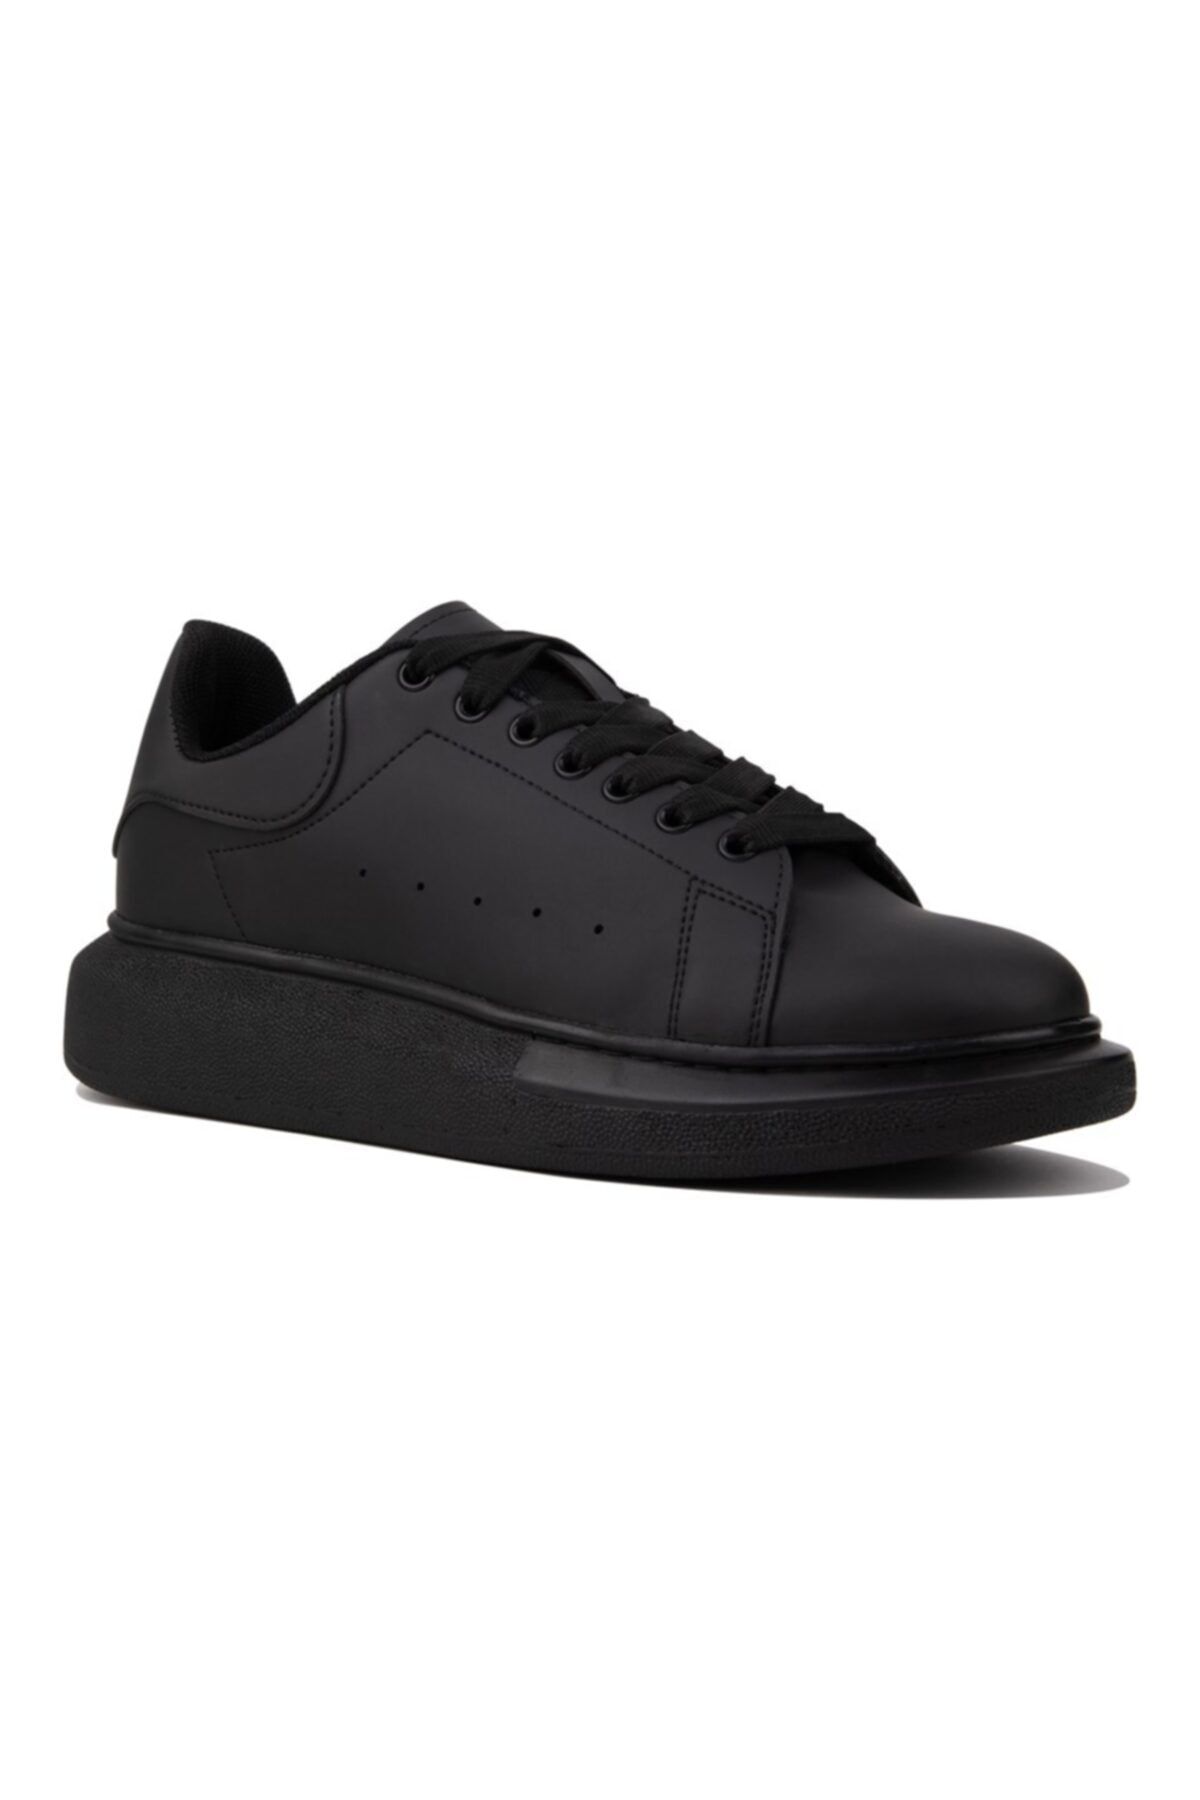 NAVYSIDE Unisex Siyah Bağcıklı Sneaker-dar Kalıptır-yüksek Taban 4cm- Günlük Spor Ayakkabı-mcqueen